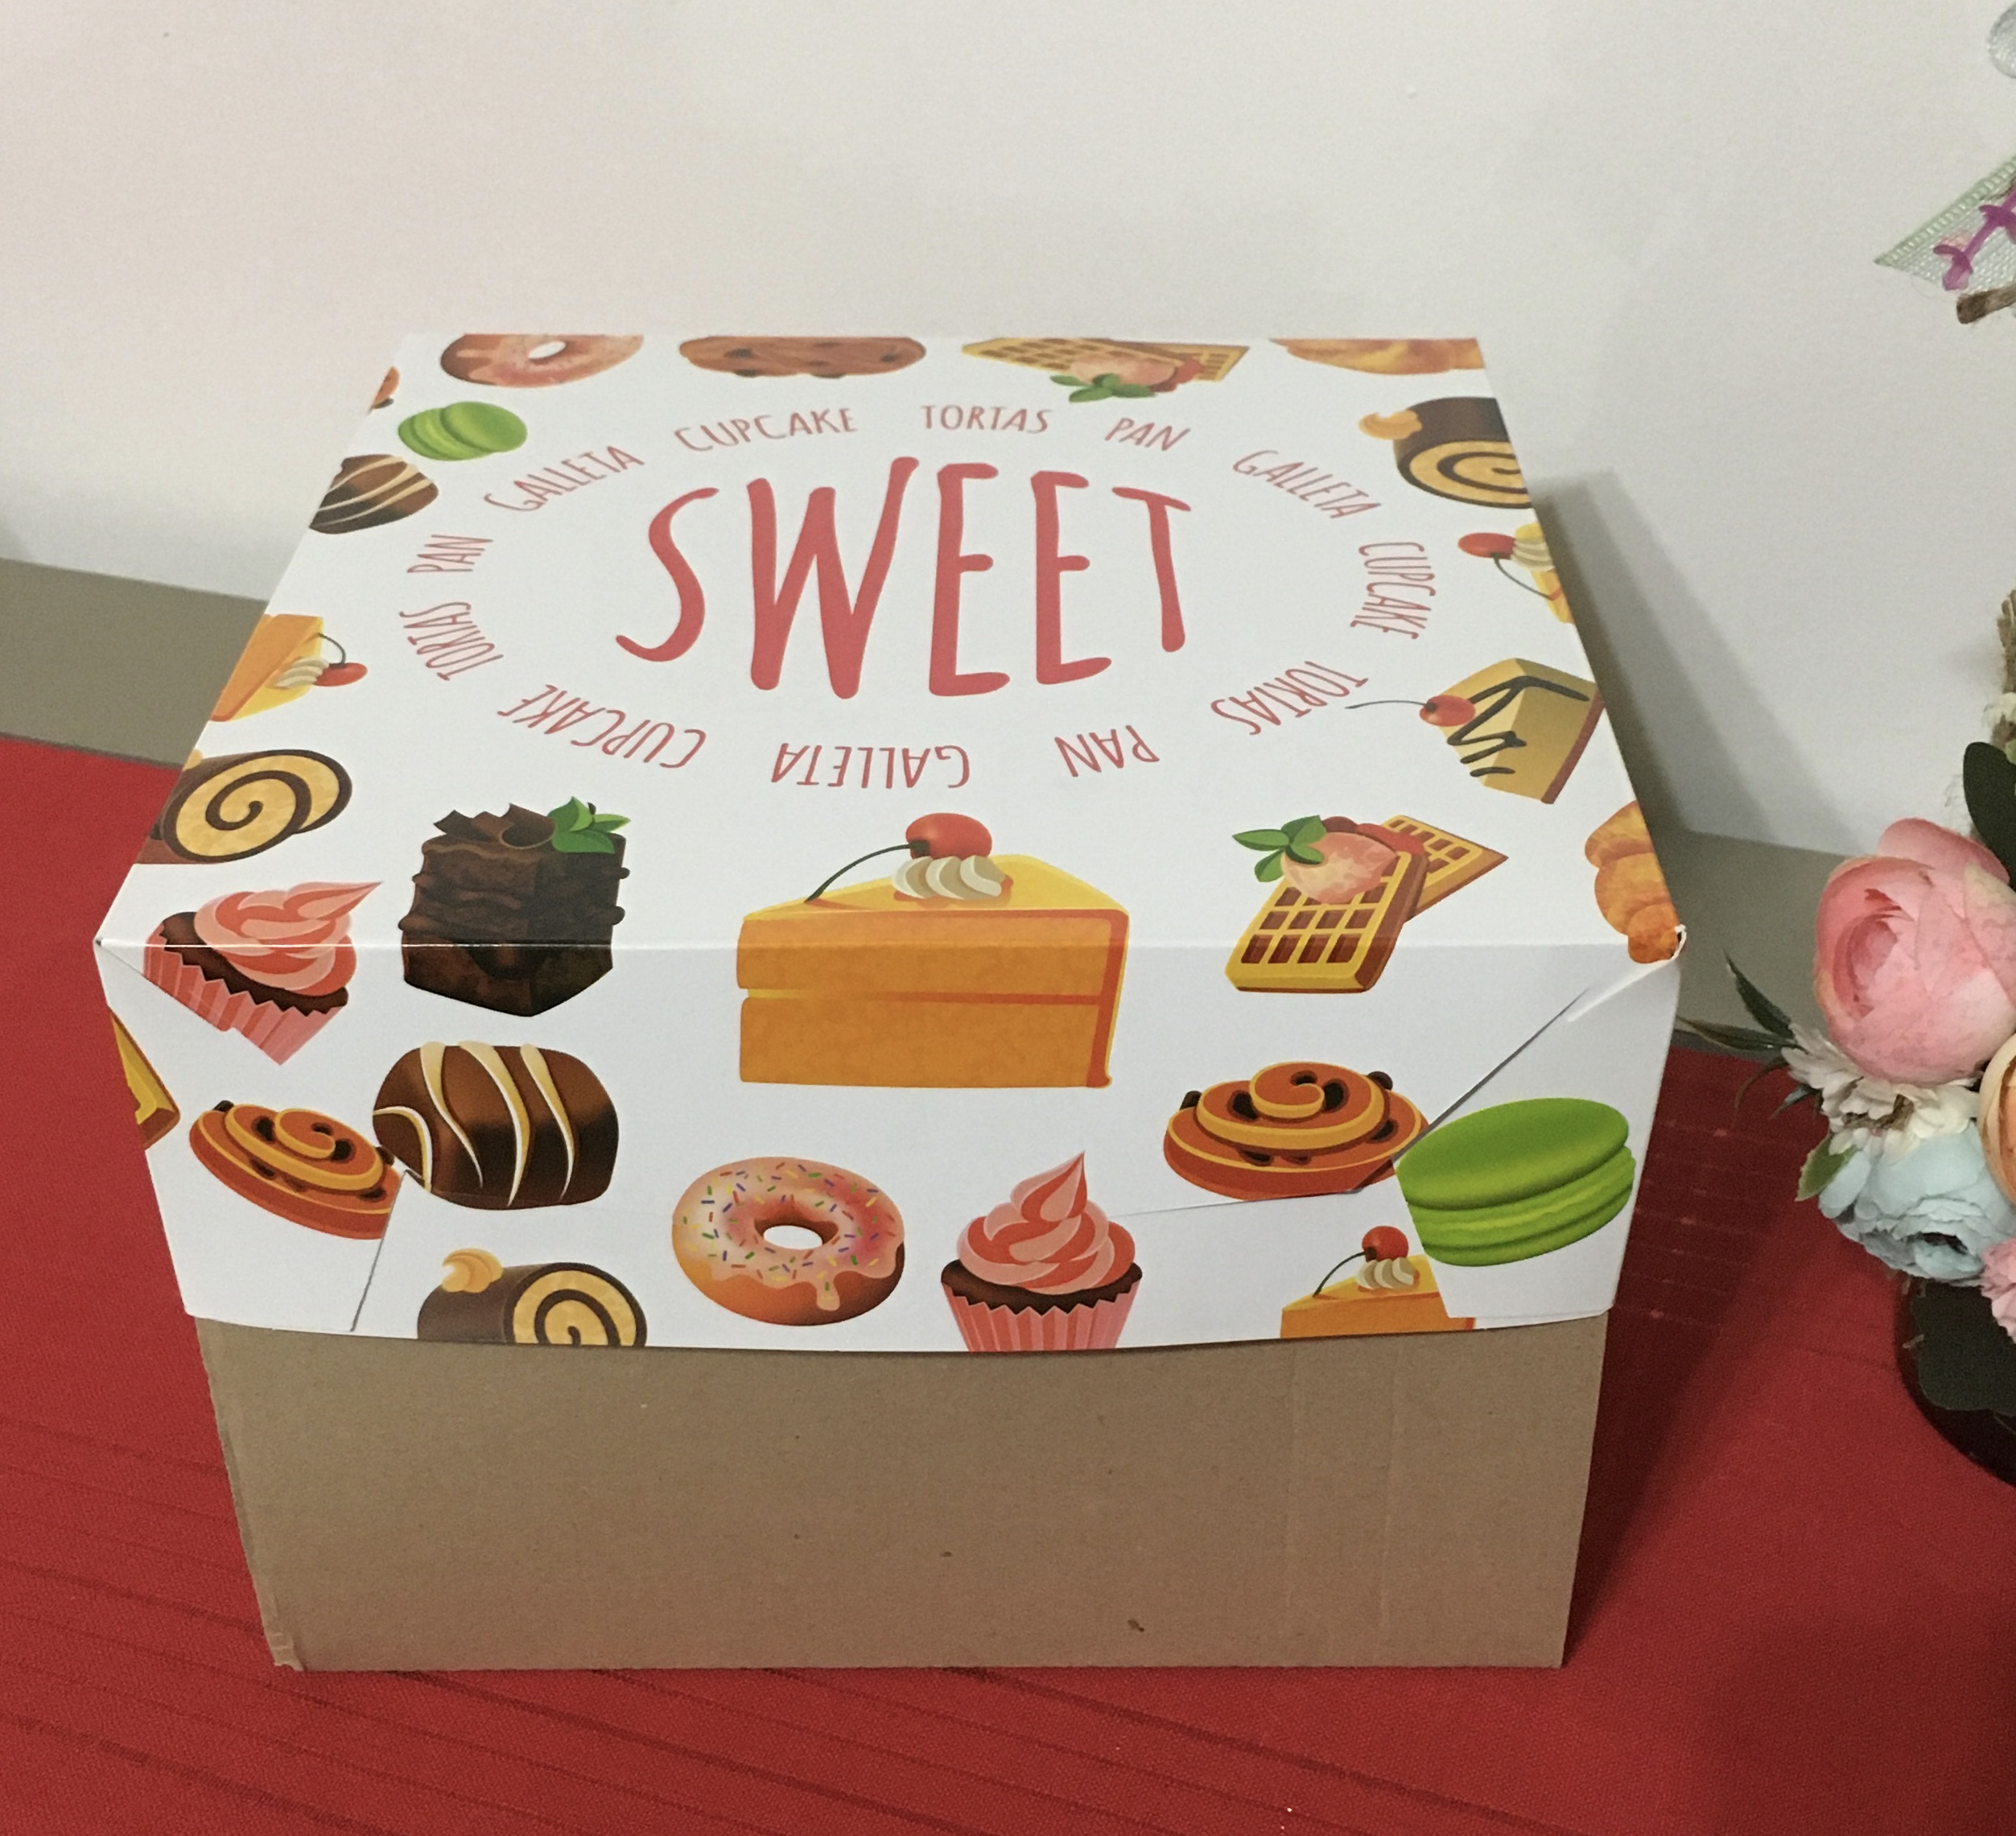 Caja para Torta Individual, Mini Torta Con Manija. Kraft Marrón